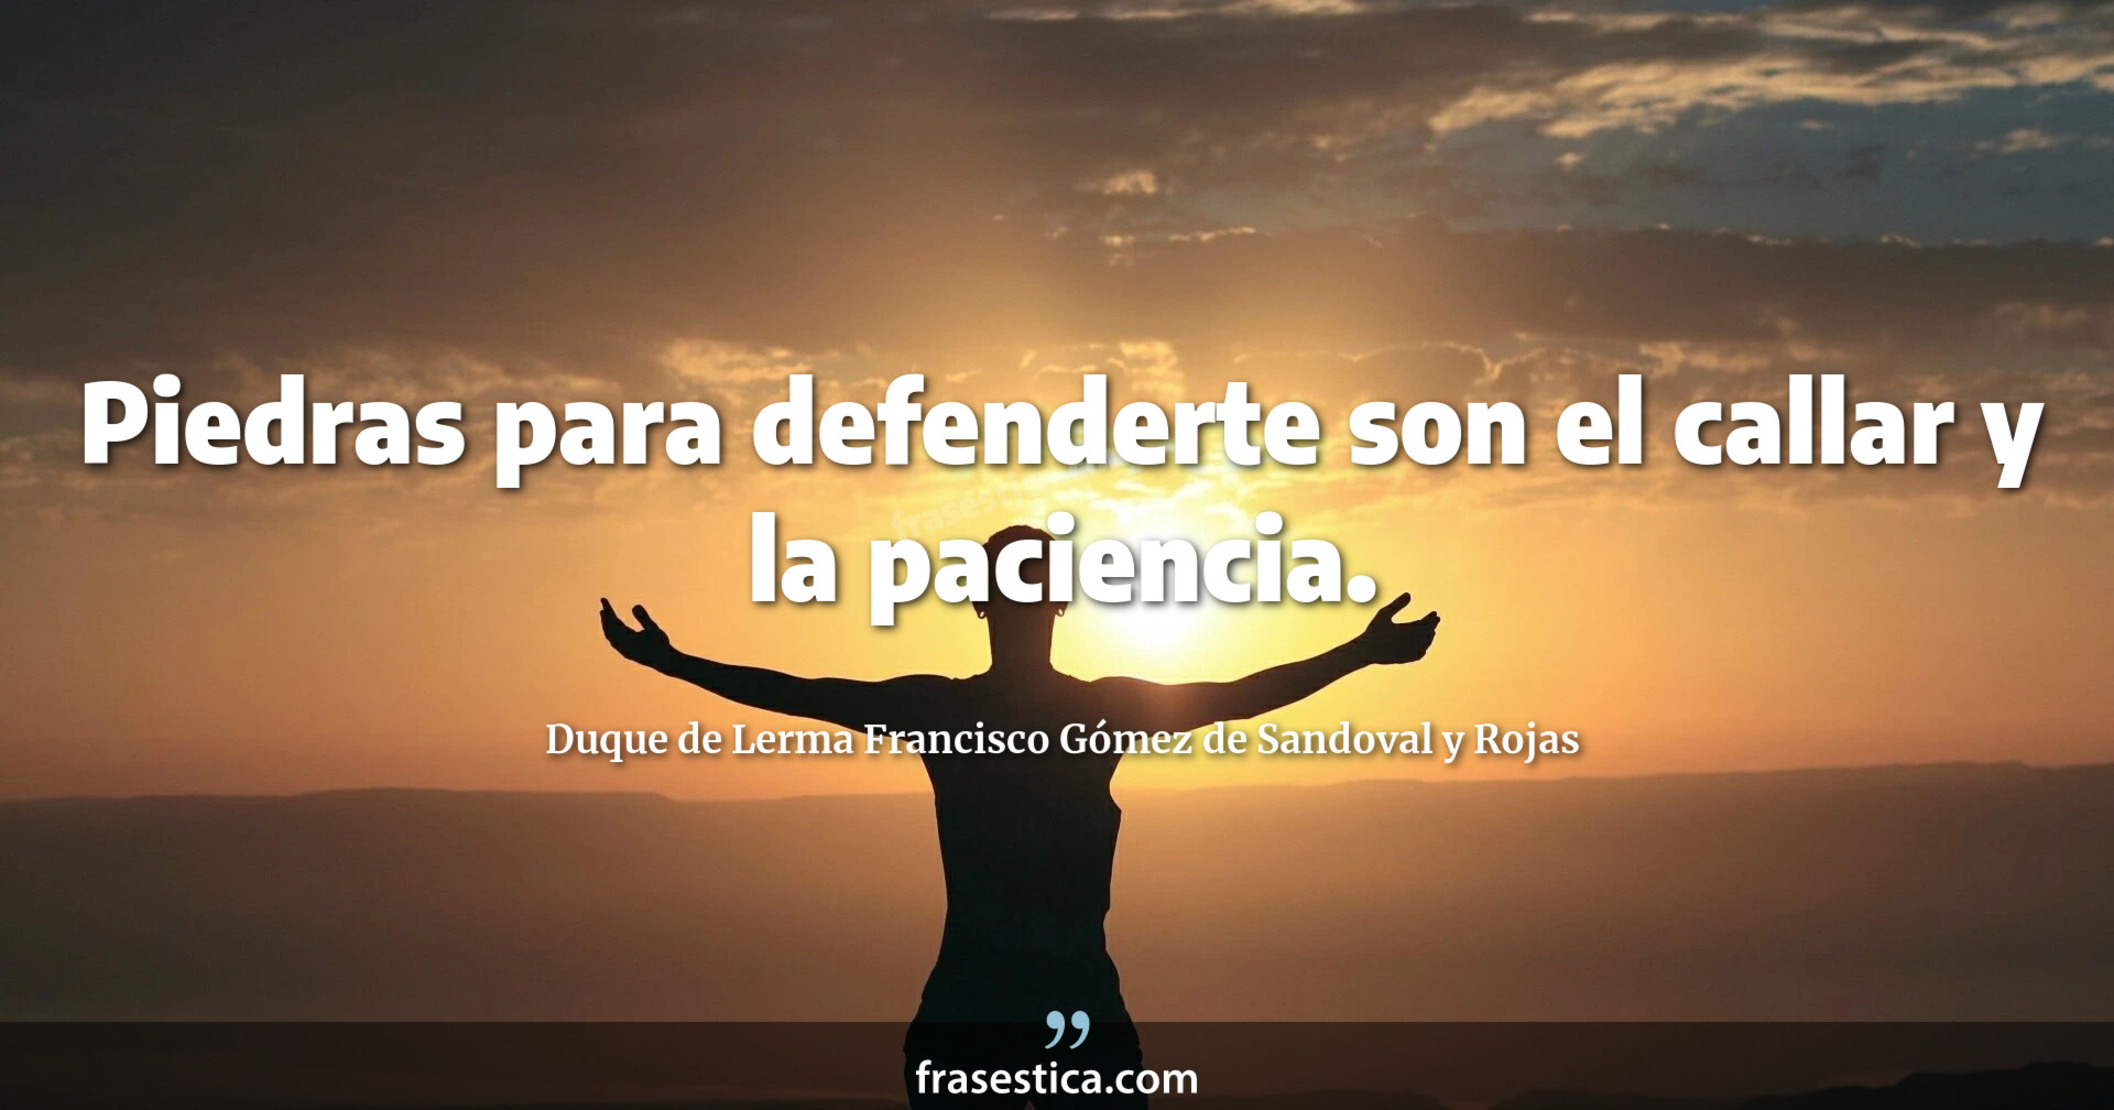 Piedras para defenderte son el callar y la paciencia. - Duque de Lerma Francisco Gómez de Sandoval y Rojas